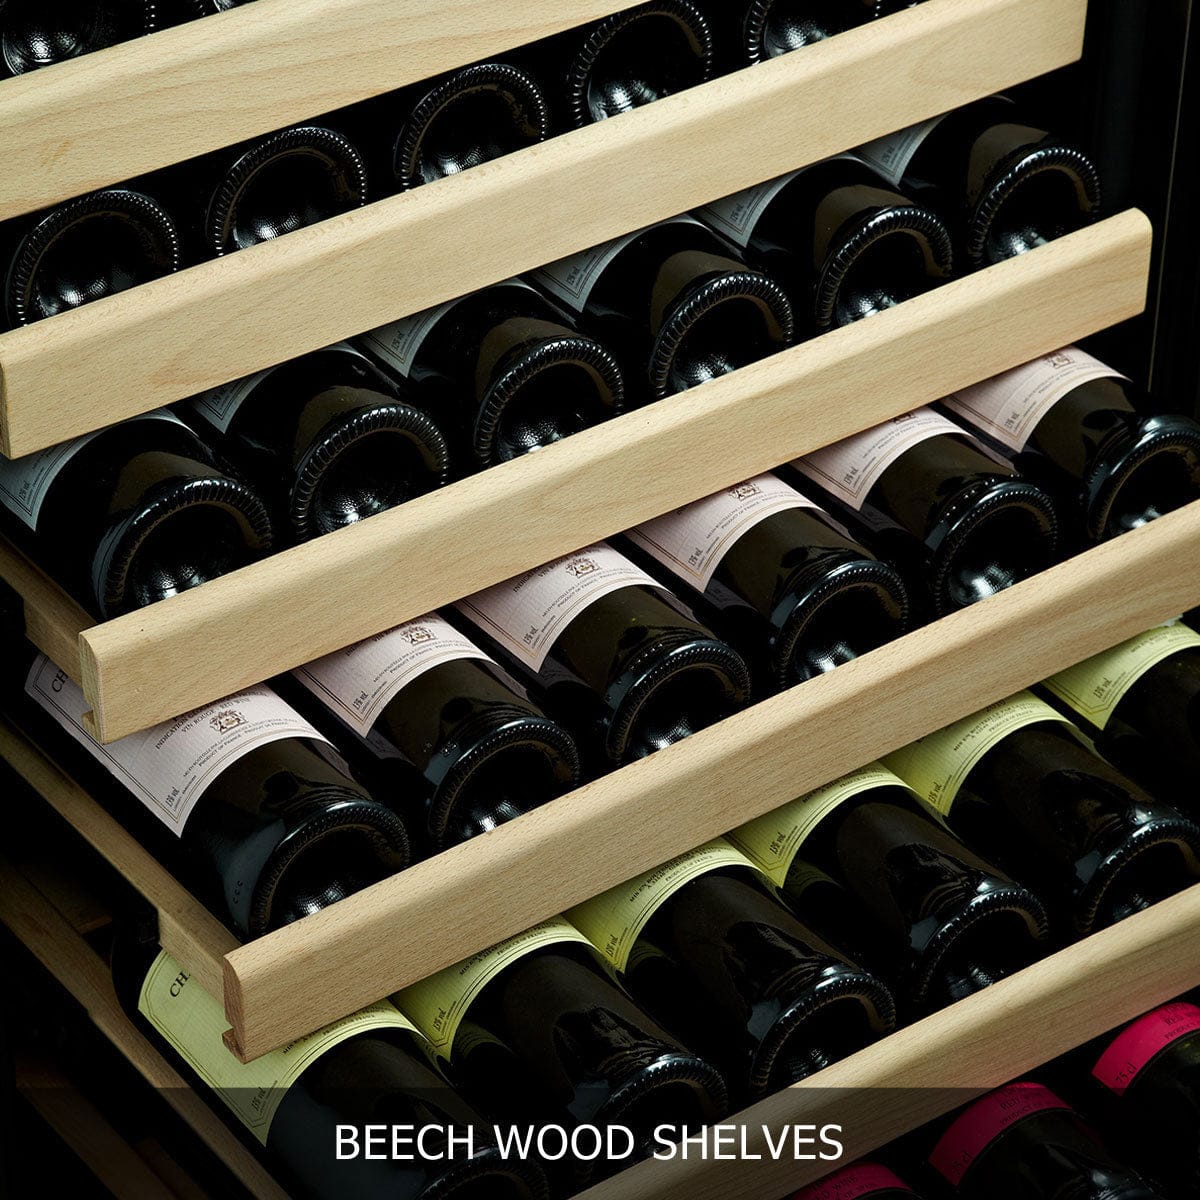 KingsBottle 100 Bottle Wine Cooler beech wood shelves filled with wine bottles.